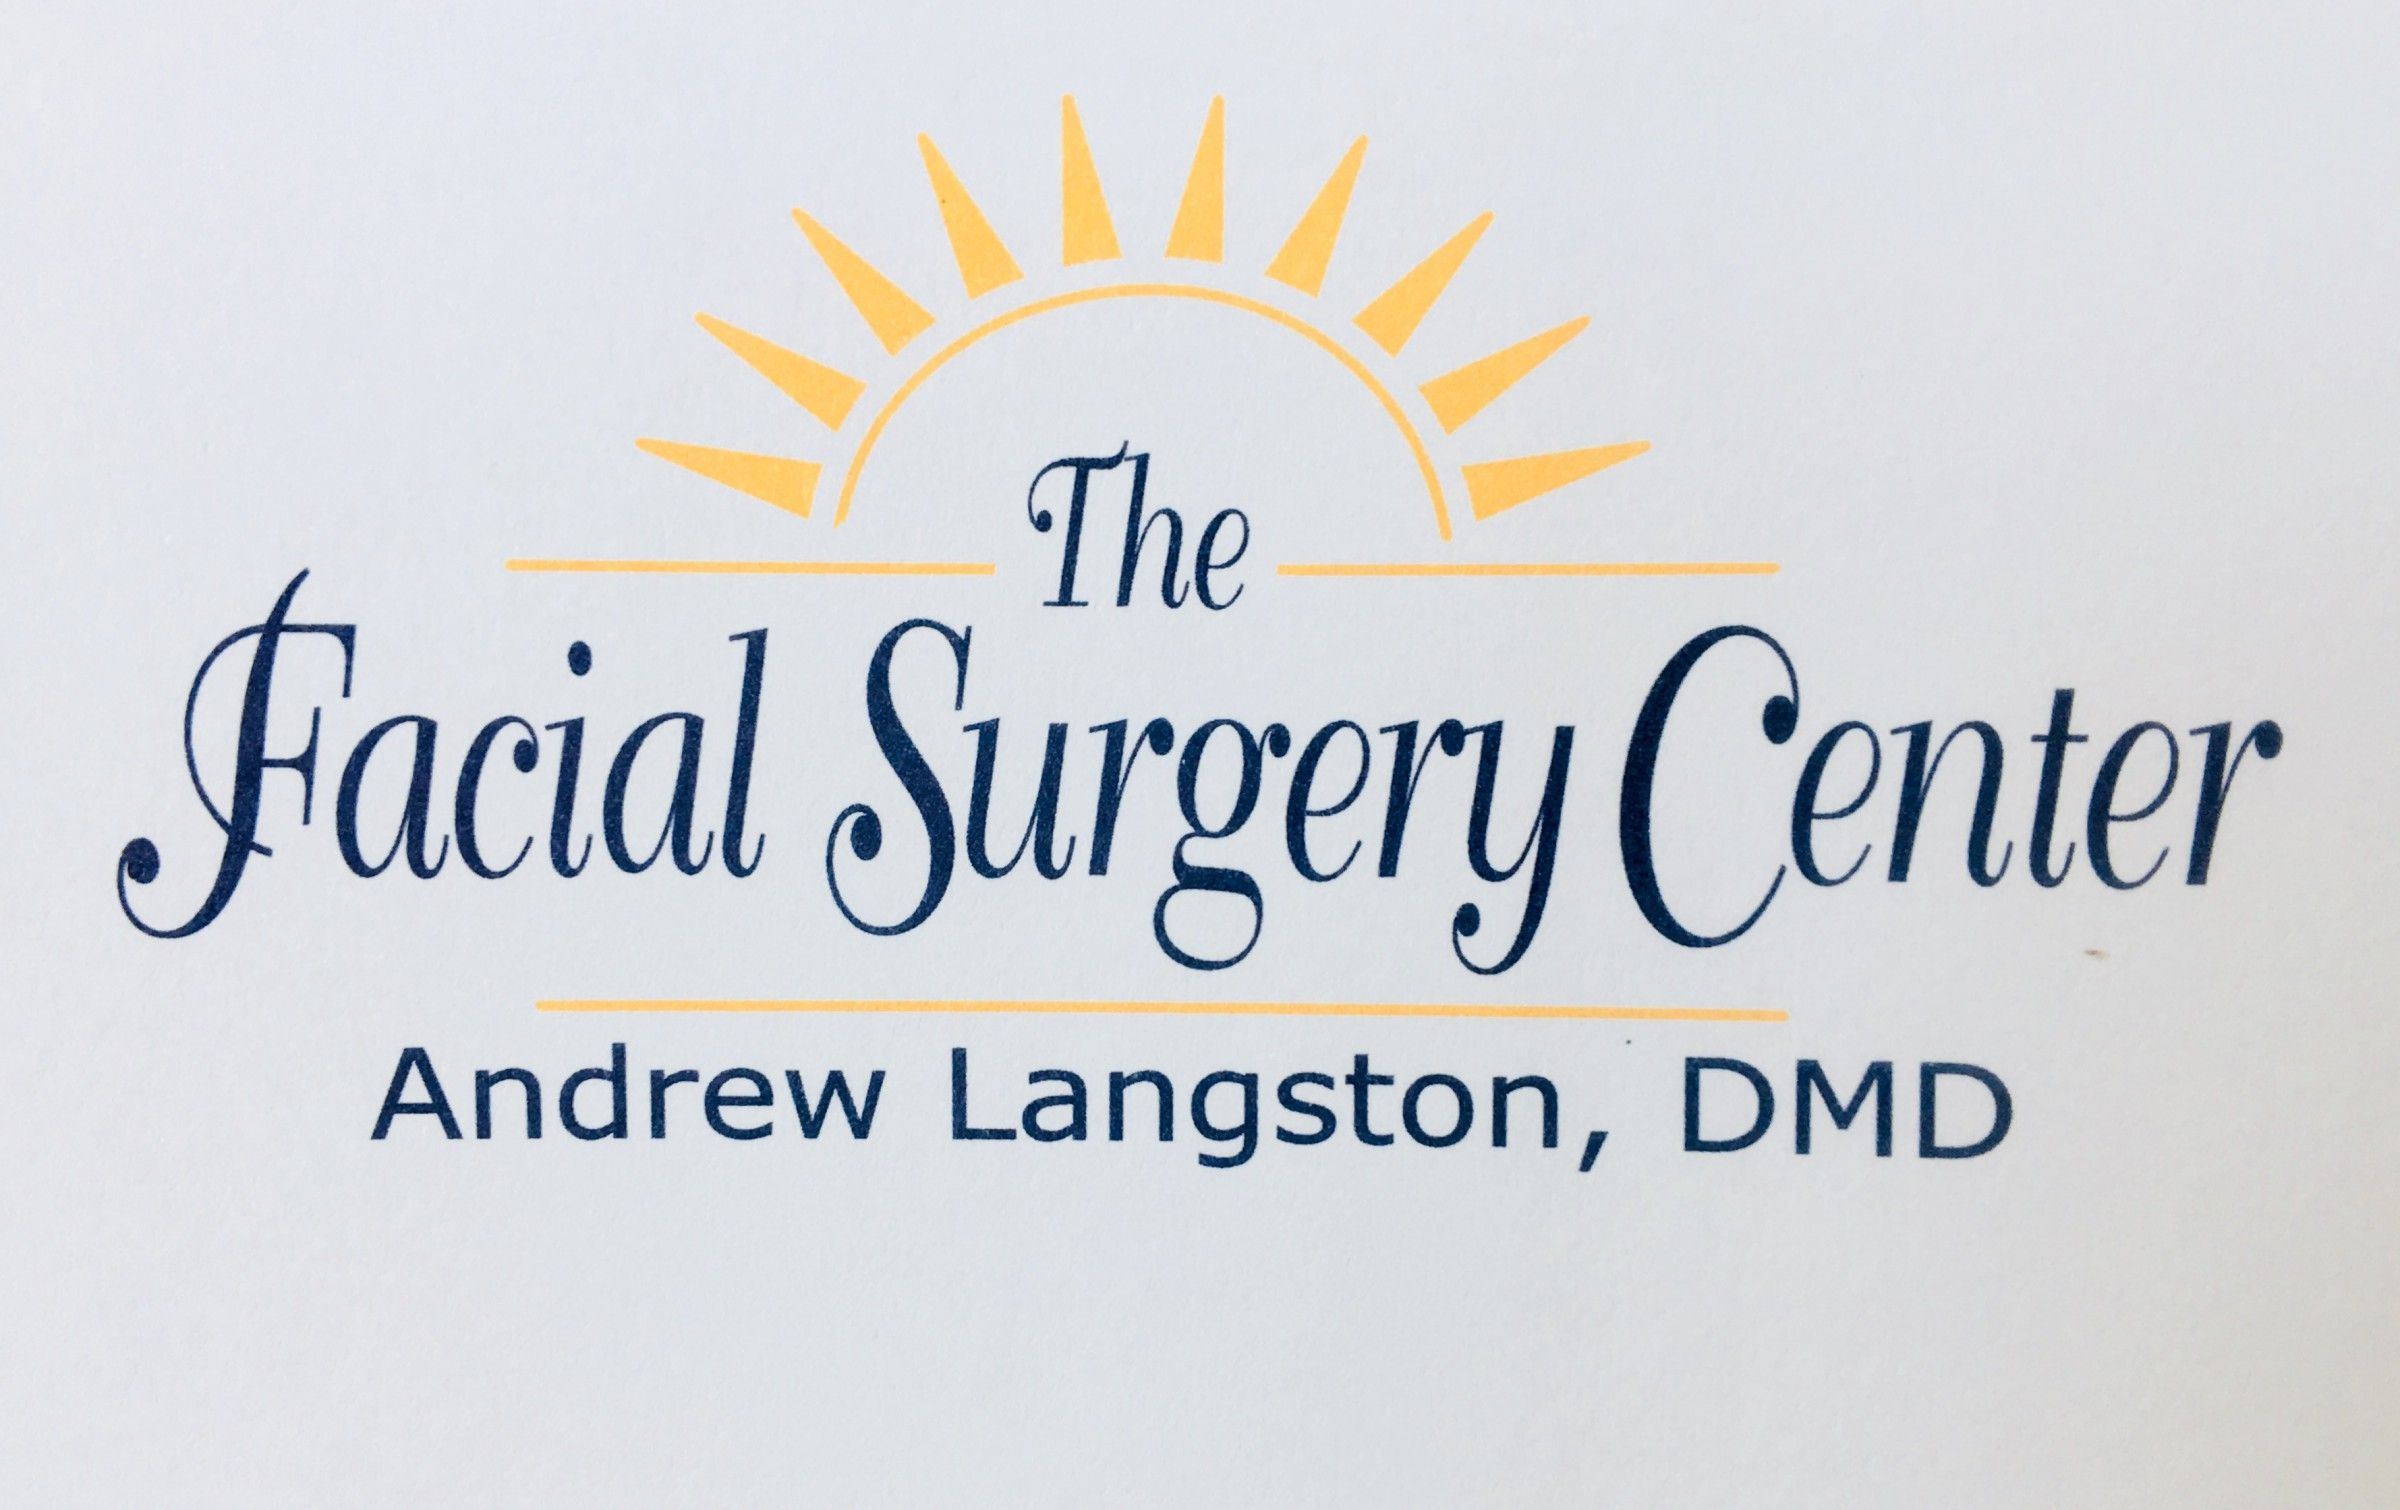 The facial surgery center